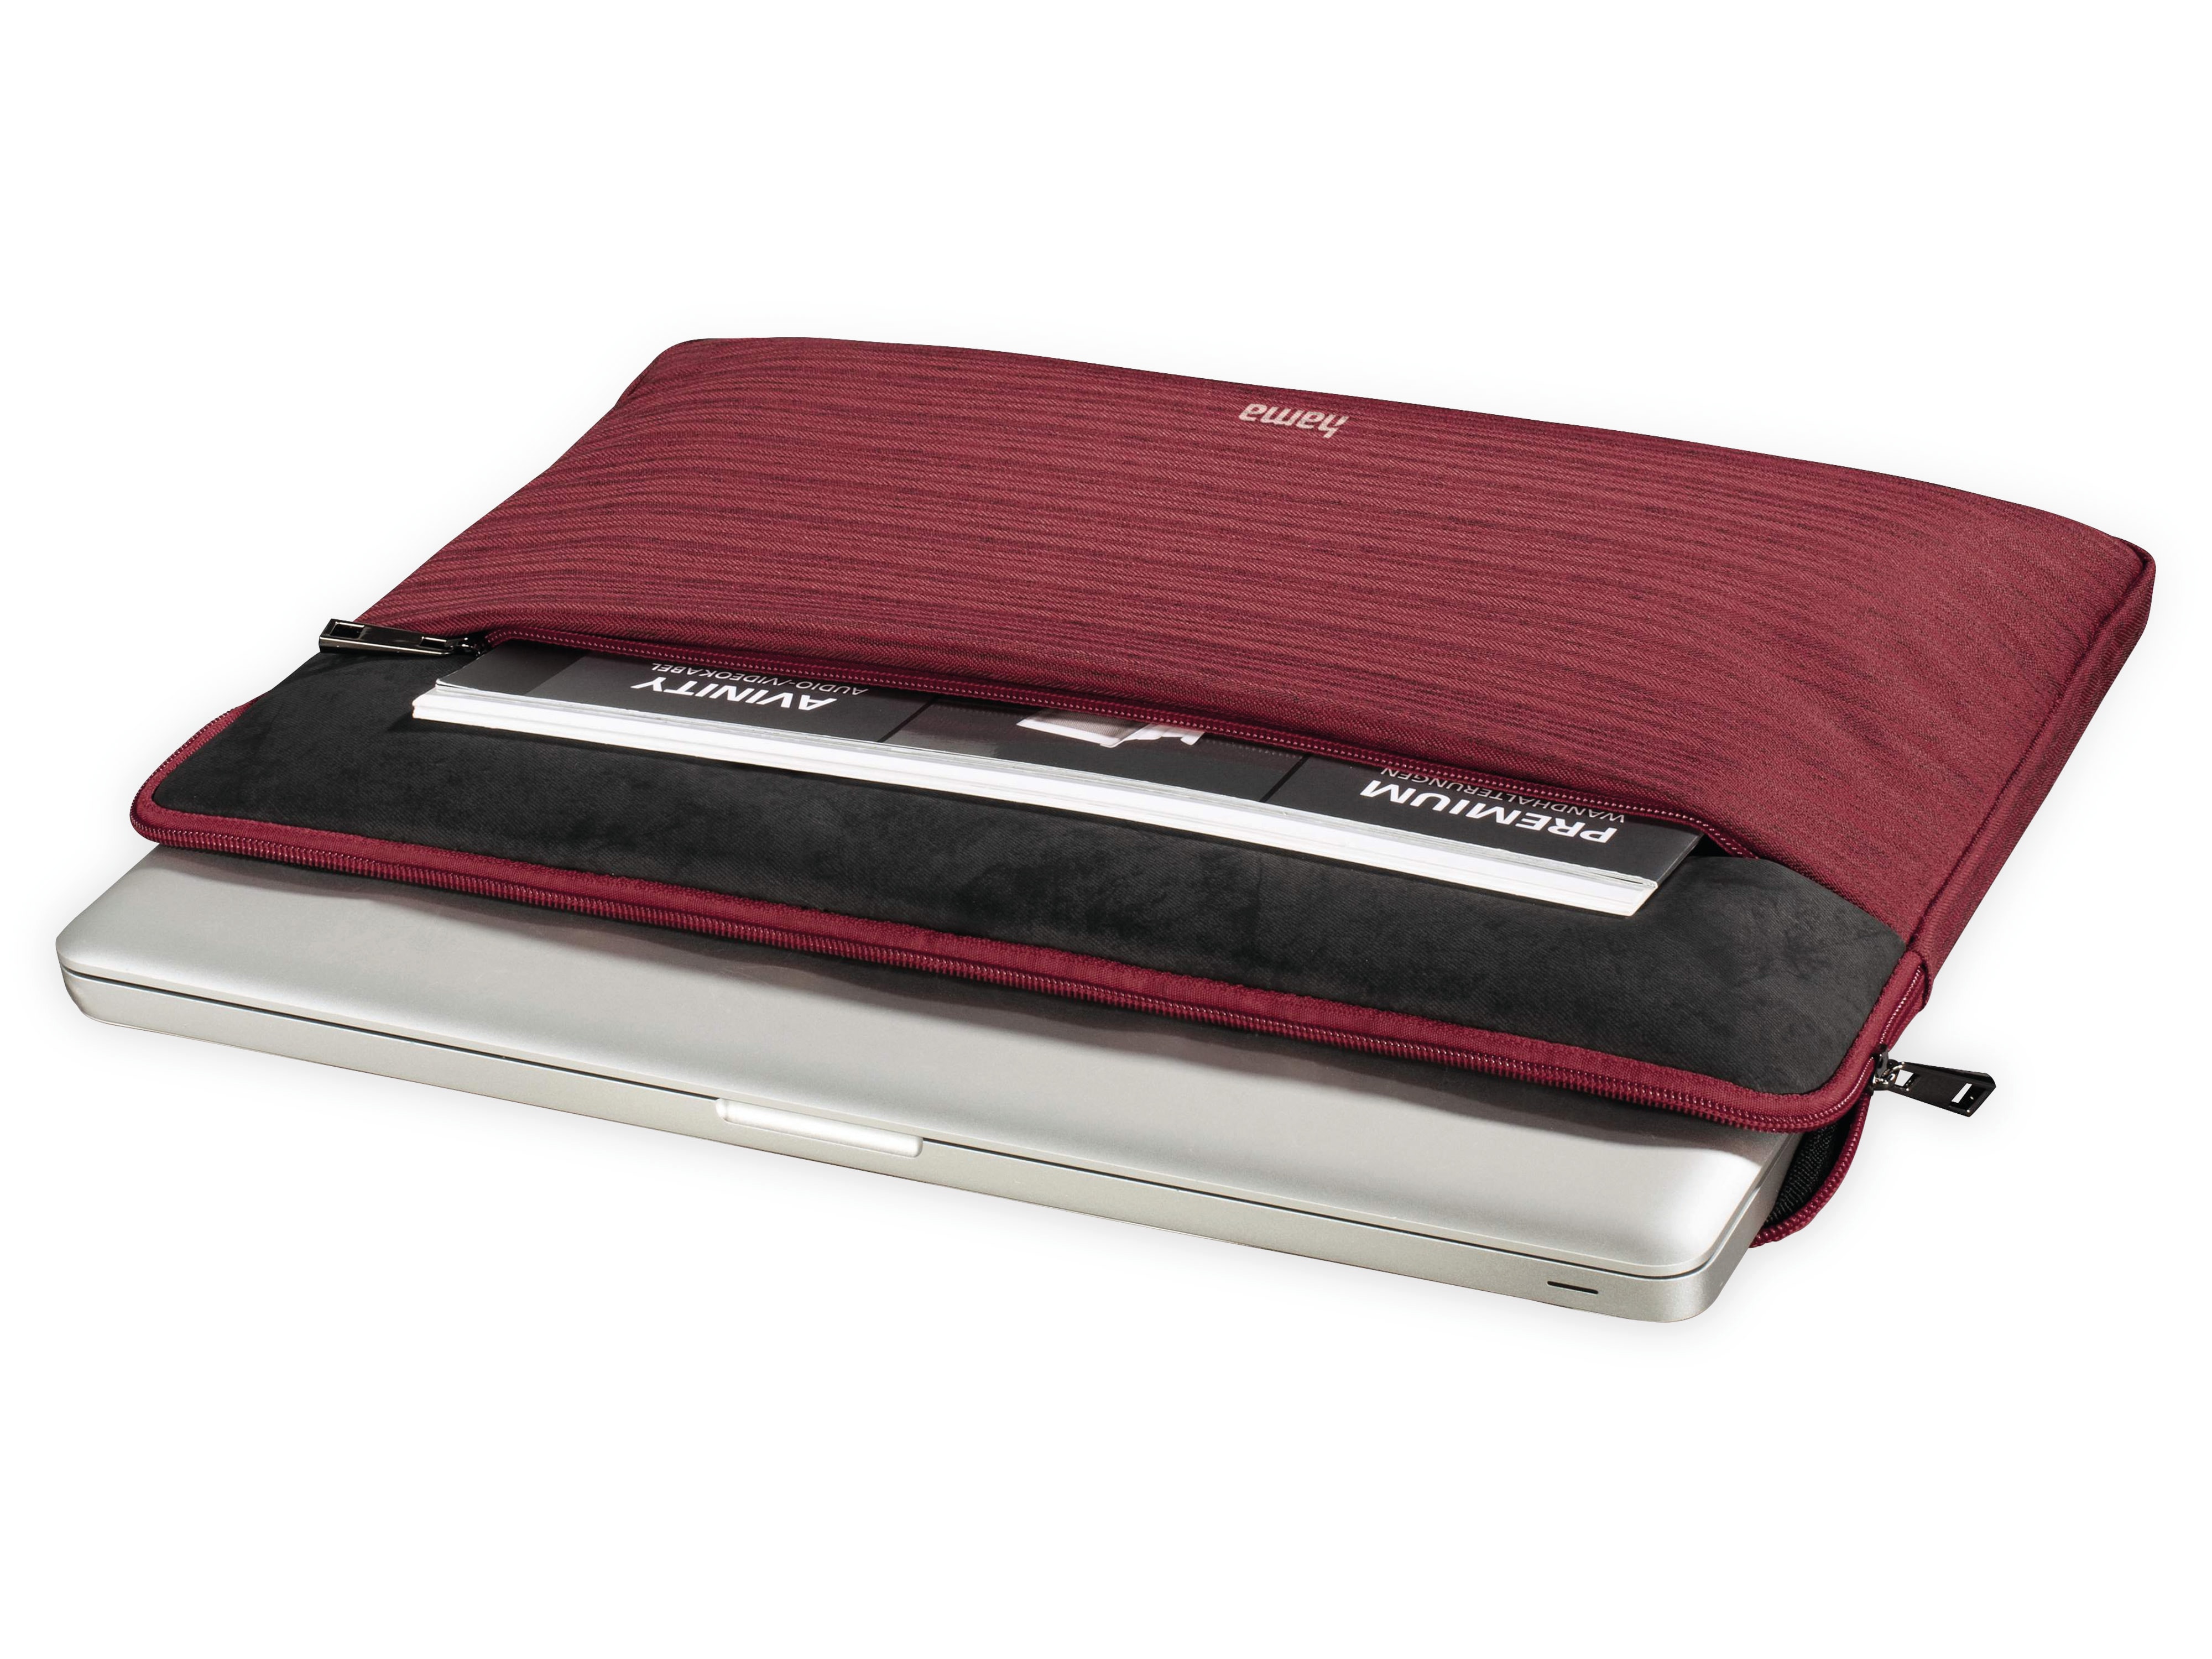 Notebook-Sleeve HAMA Tayrona, 13,3", rot